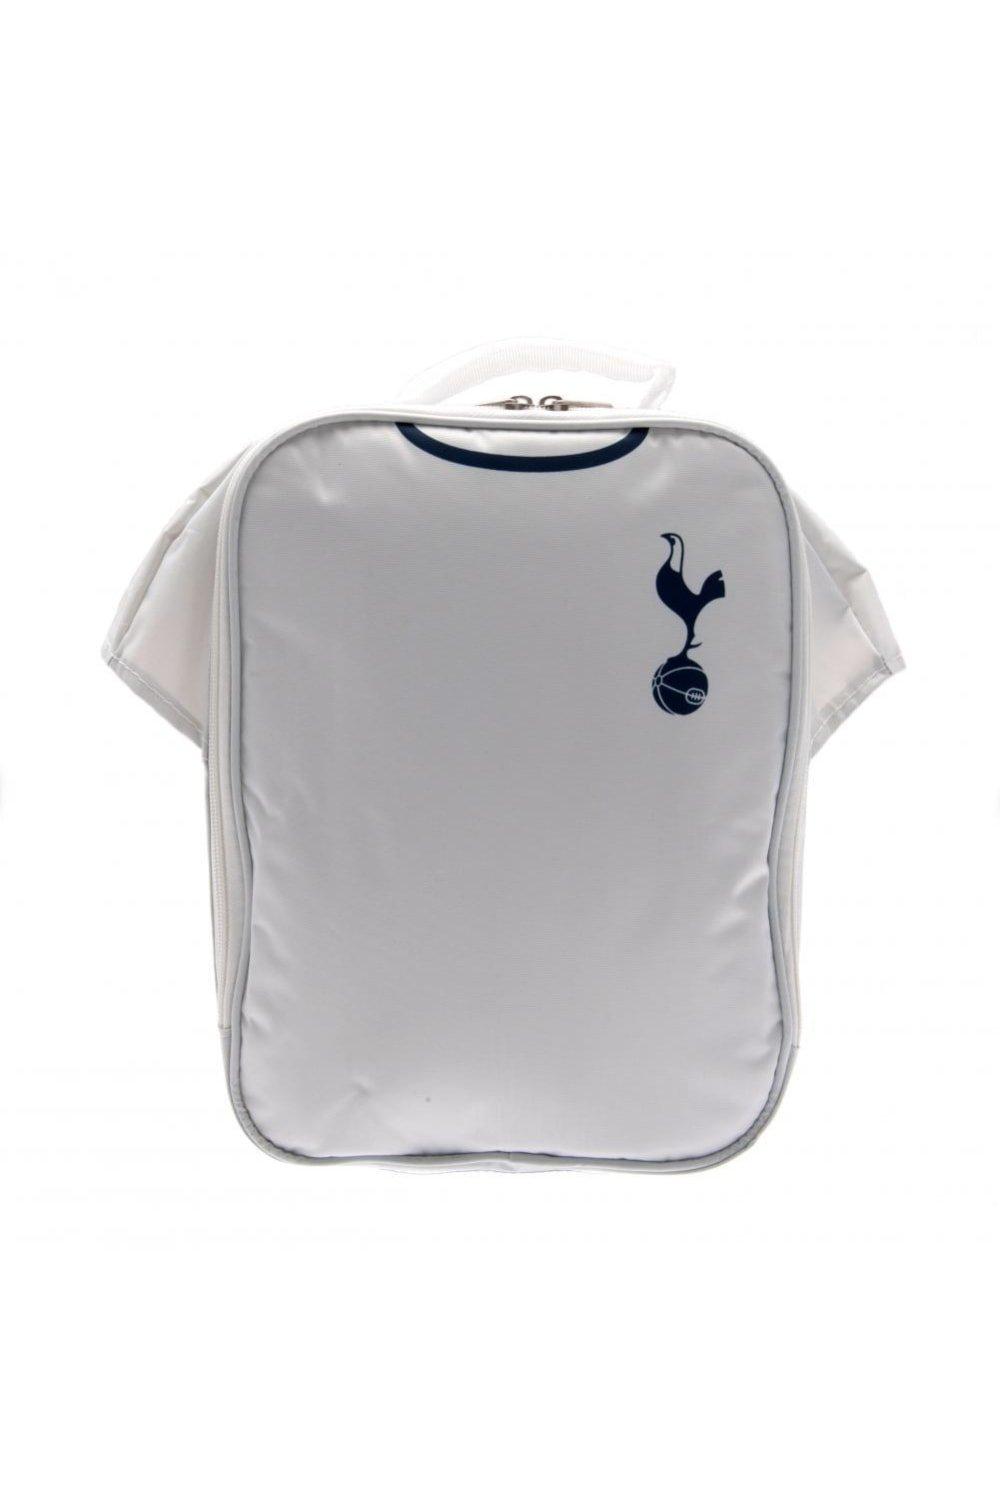 Сумка для обеда Tottenham Hotspur FC, белый printio футболка классическая официальная эмблема футбольного клуба тоттенхэм